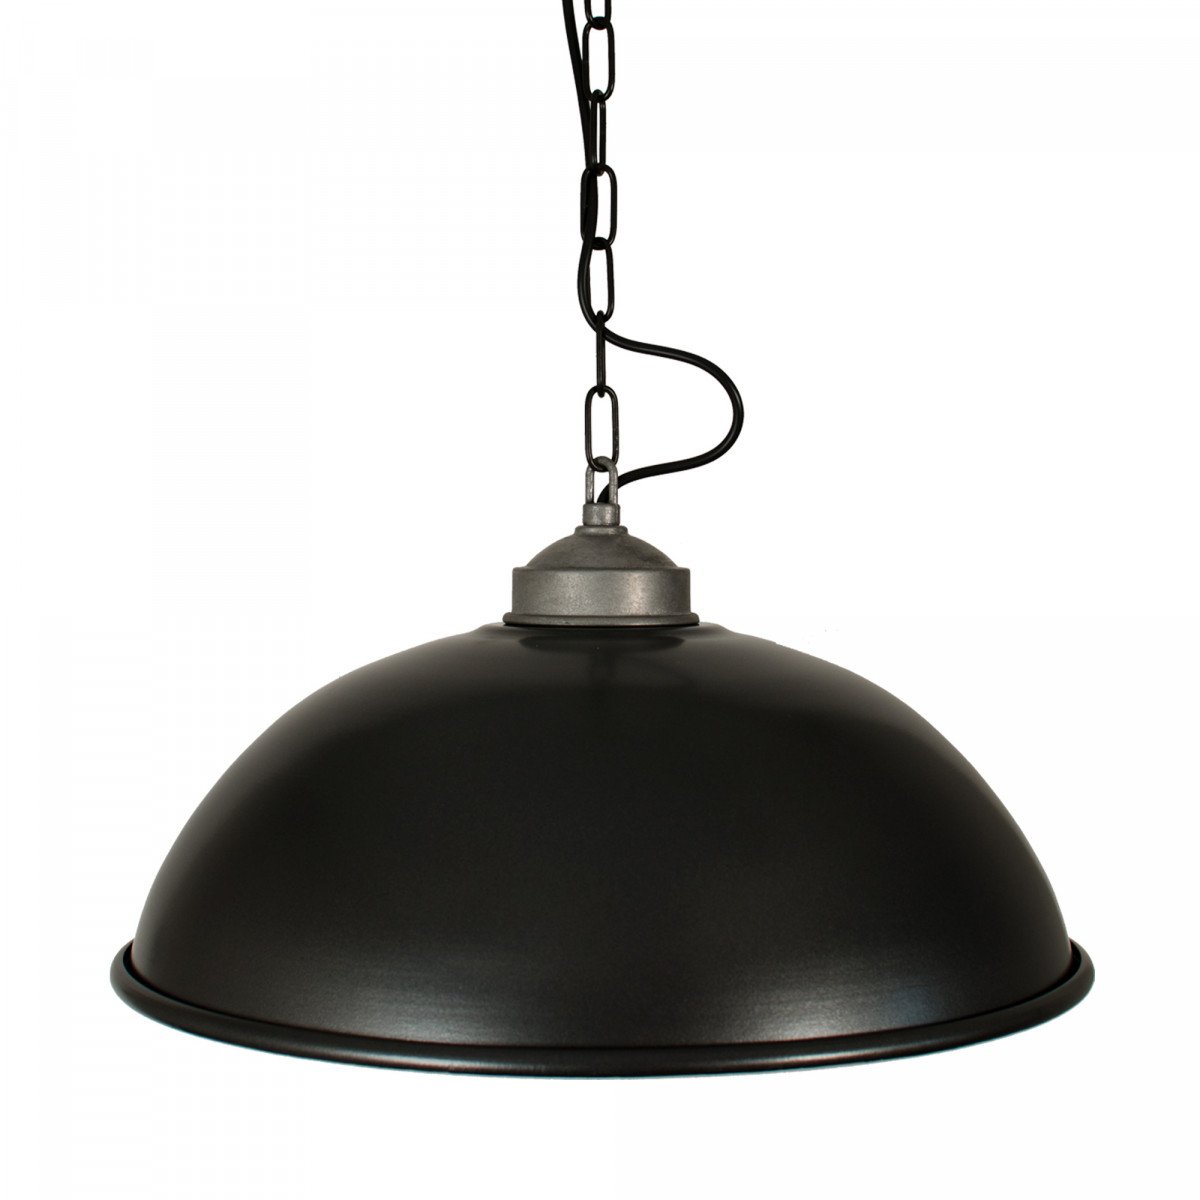 Hanglamp Industrial Antraciet